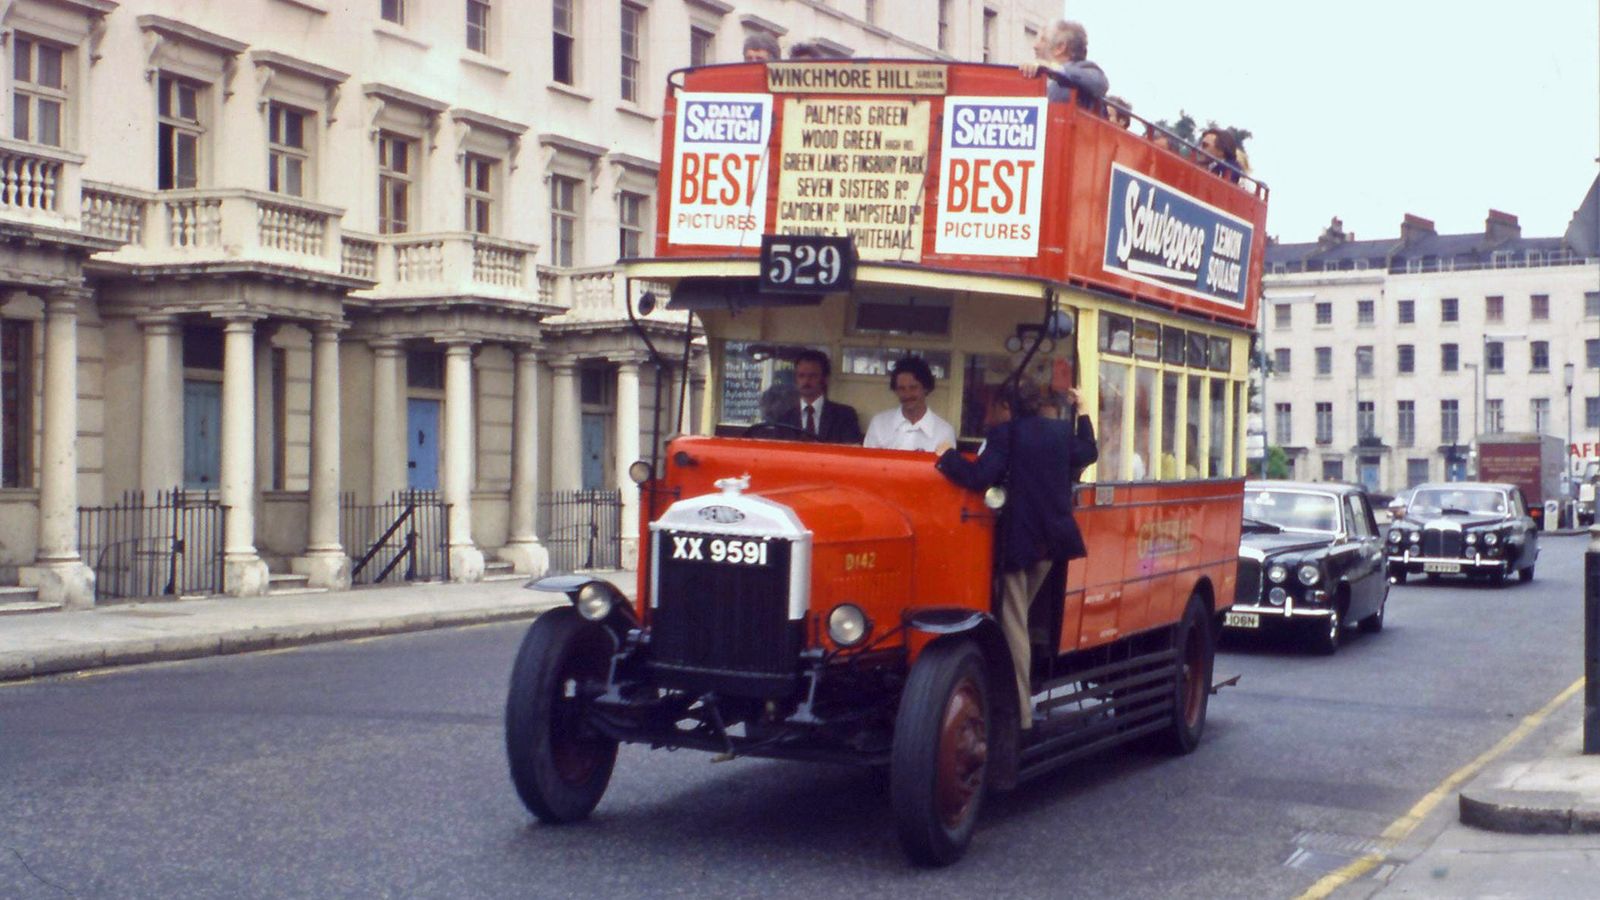 Foto: El D142, autobús independiente o pirata de 1925, restaurado en los años setenta. (Museo del Autobús de Londres)